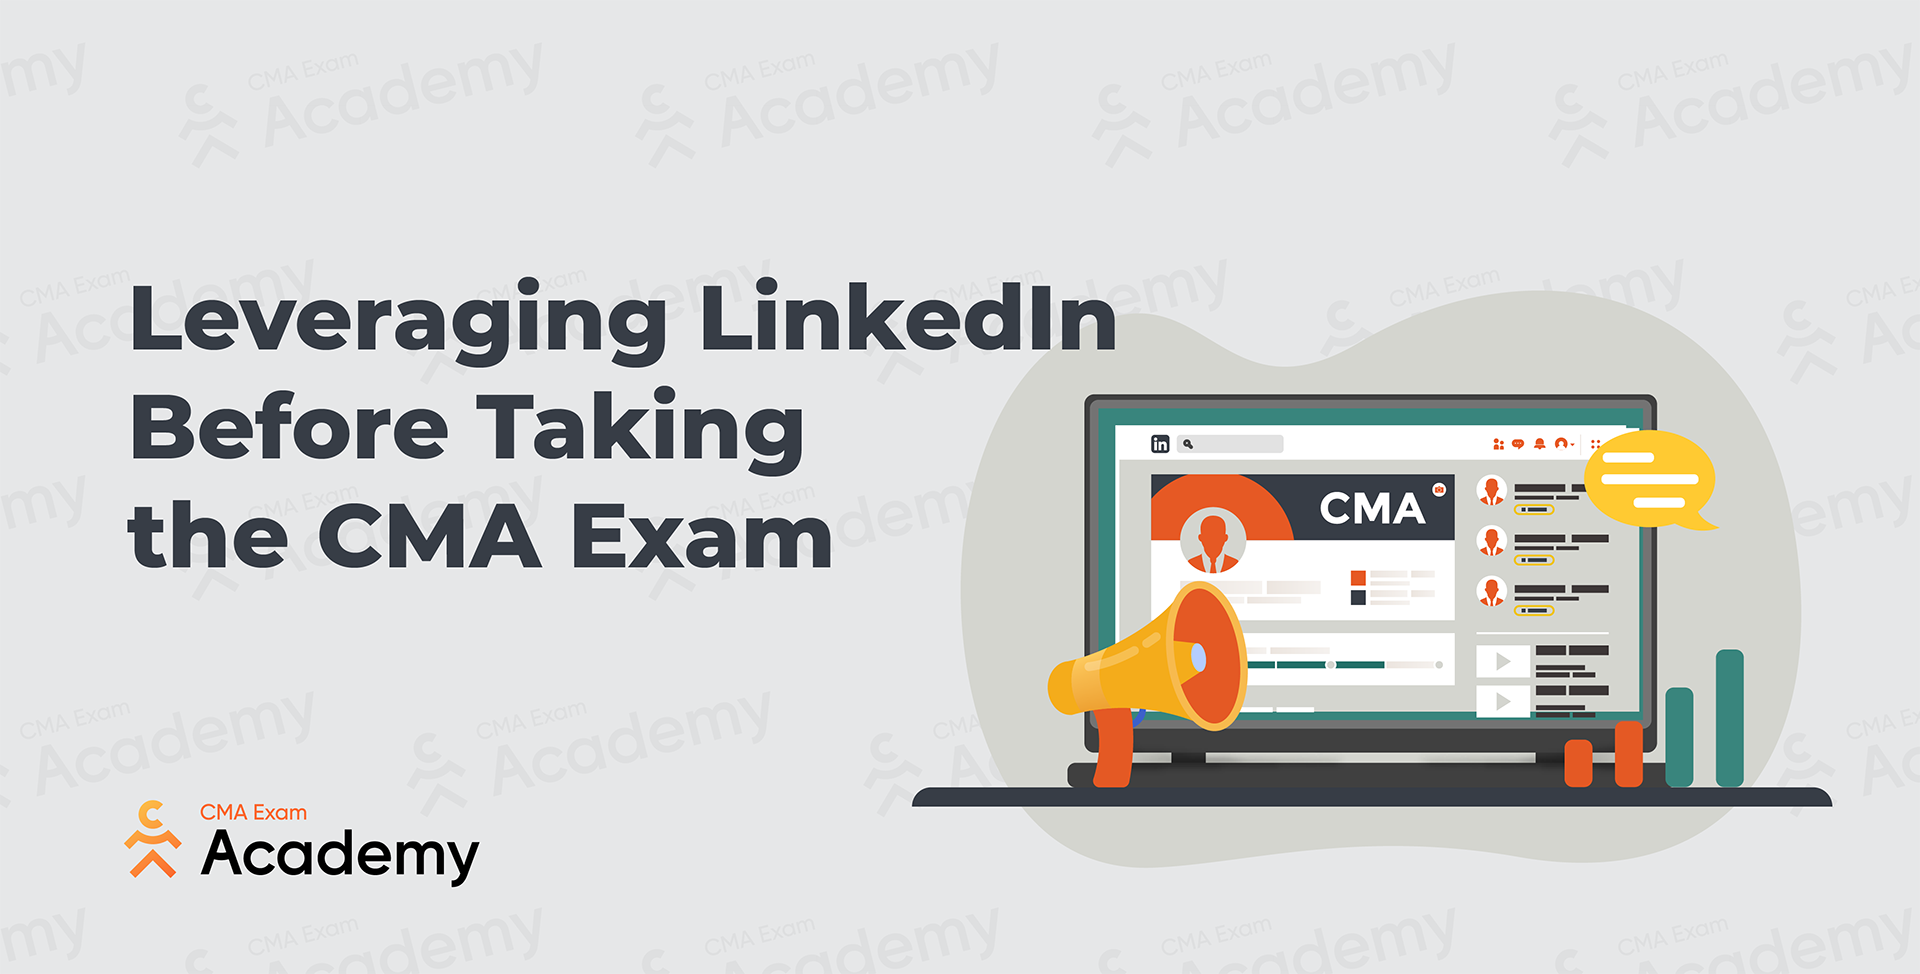 Image - Leveraging LinkedIn Before Taking the CMA Exam